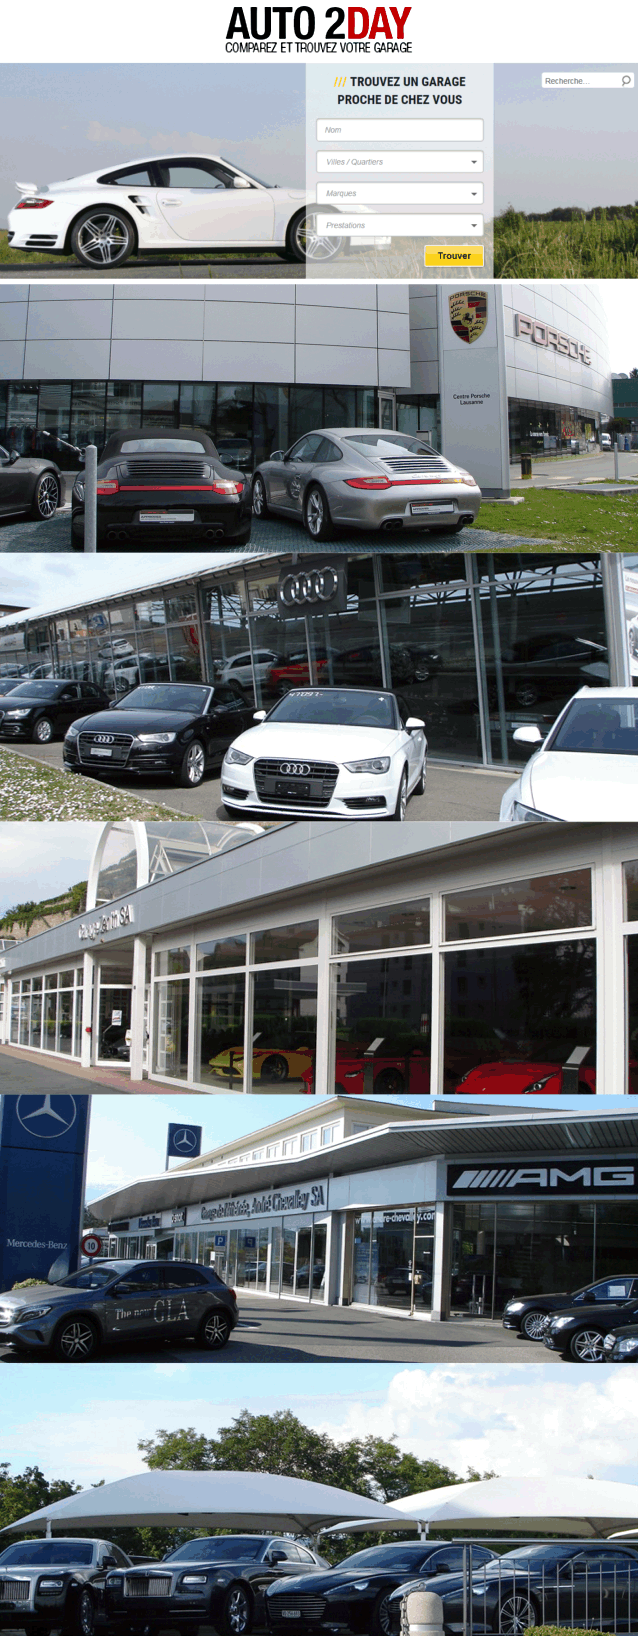 auto2day.ch le plus grand site de garage automobile en suisse romande